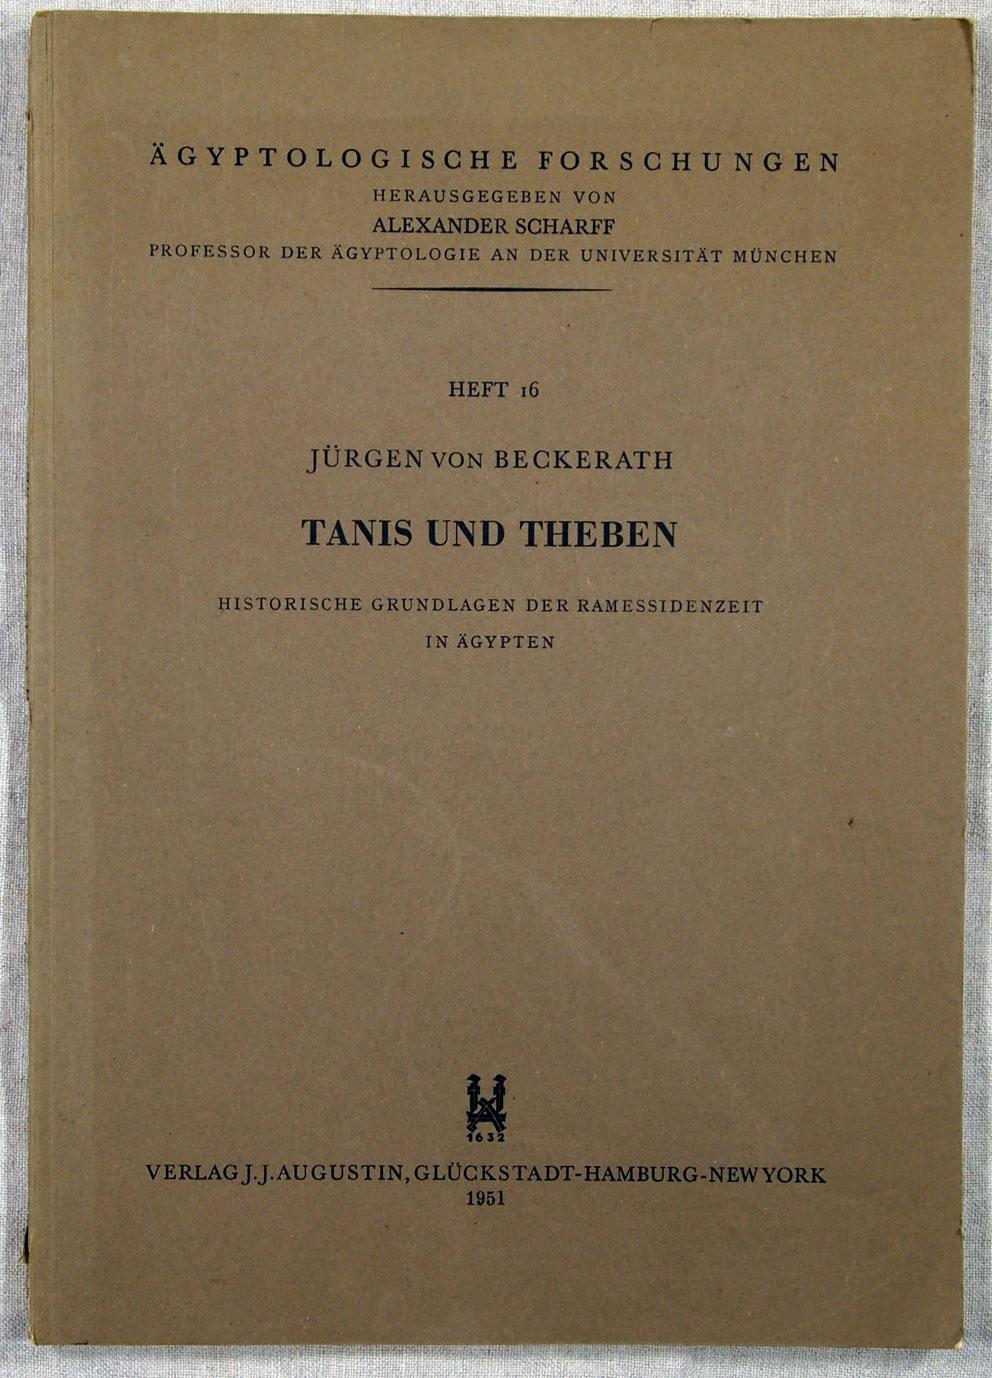 TANIS UND THEBEN Heft 16 Historische Grundlagen der Ramessideneit in Agypten, Agyptologische Forschungen